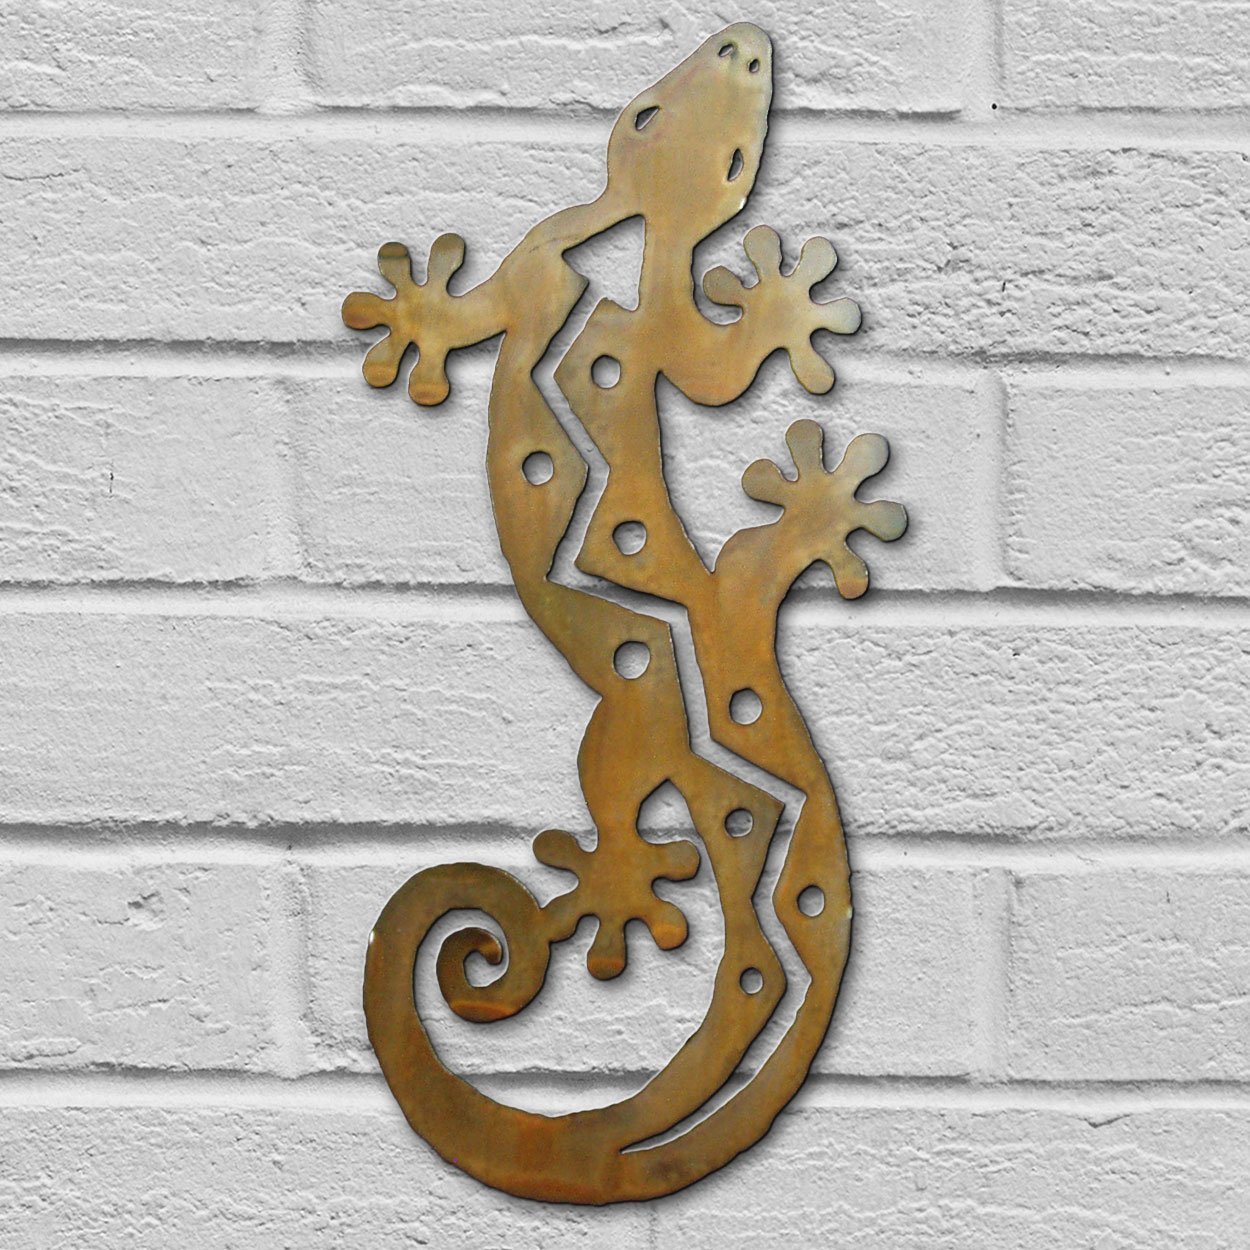 165181 - 12in S-Shaped Lizard 3D Southwest Metal Wall Art in Rust Finish